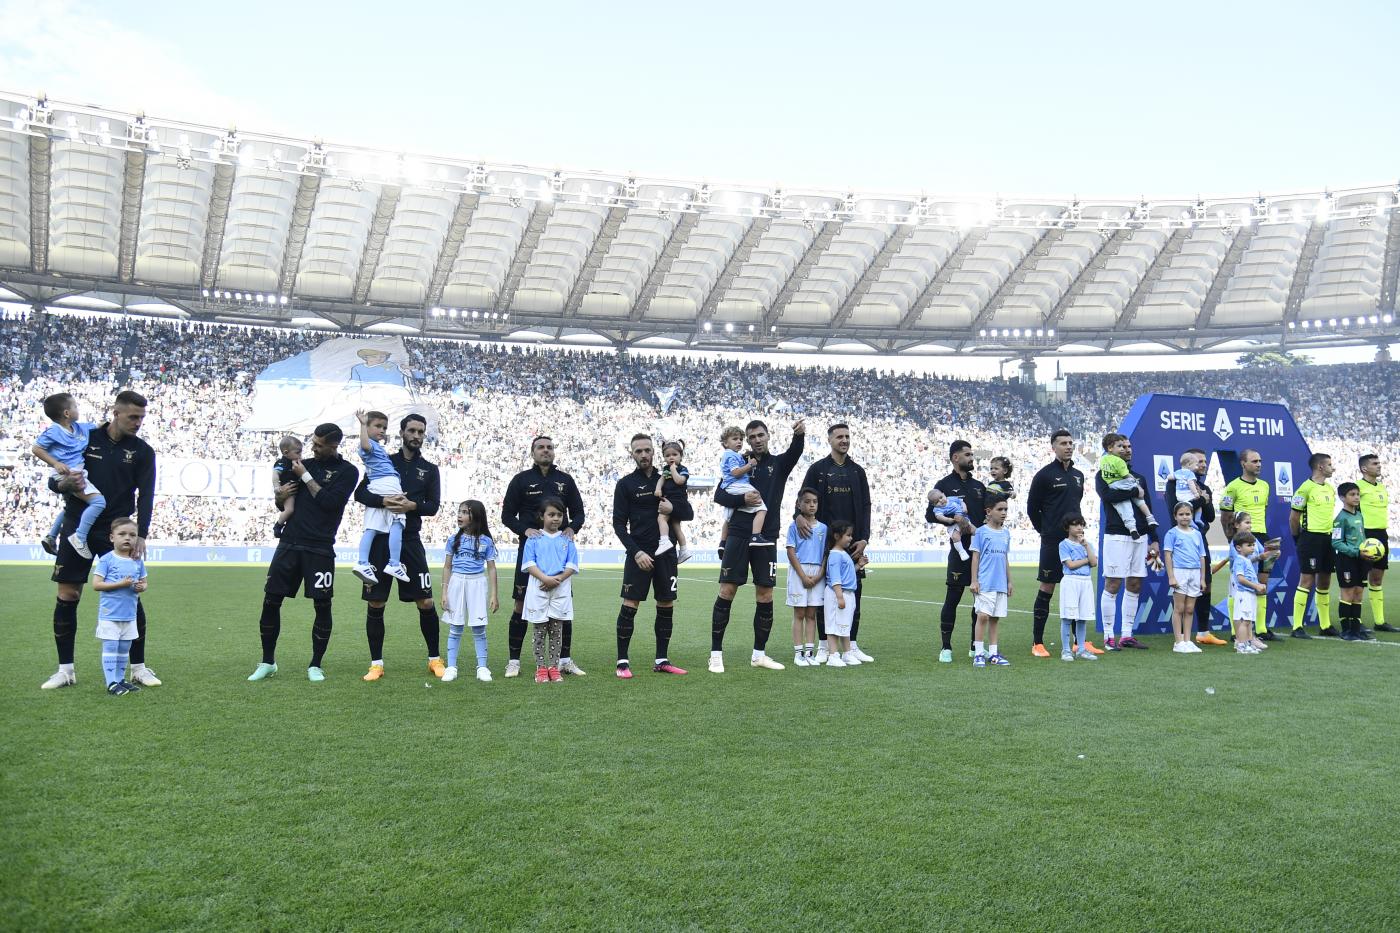 La Lazio schierata allo Stadio Olimpico